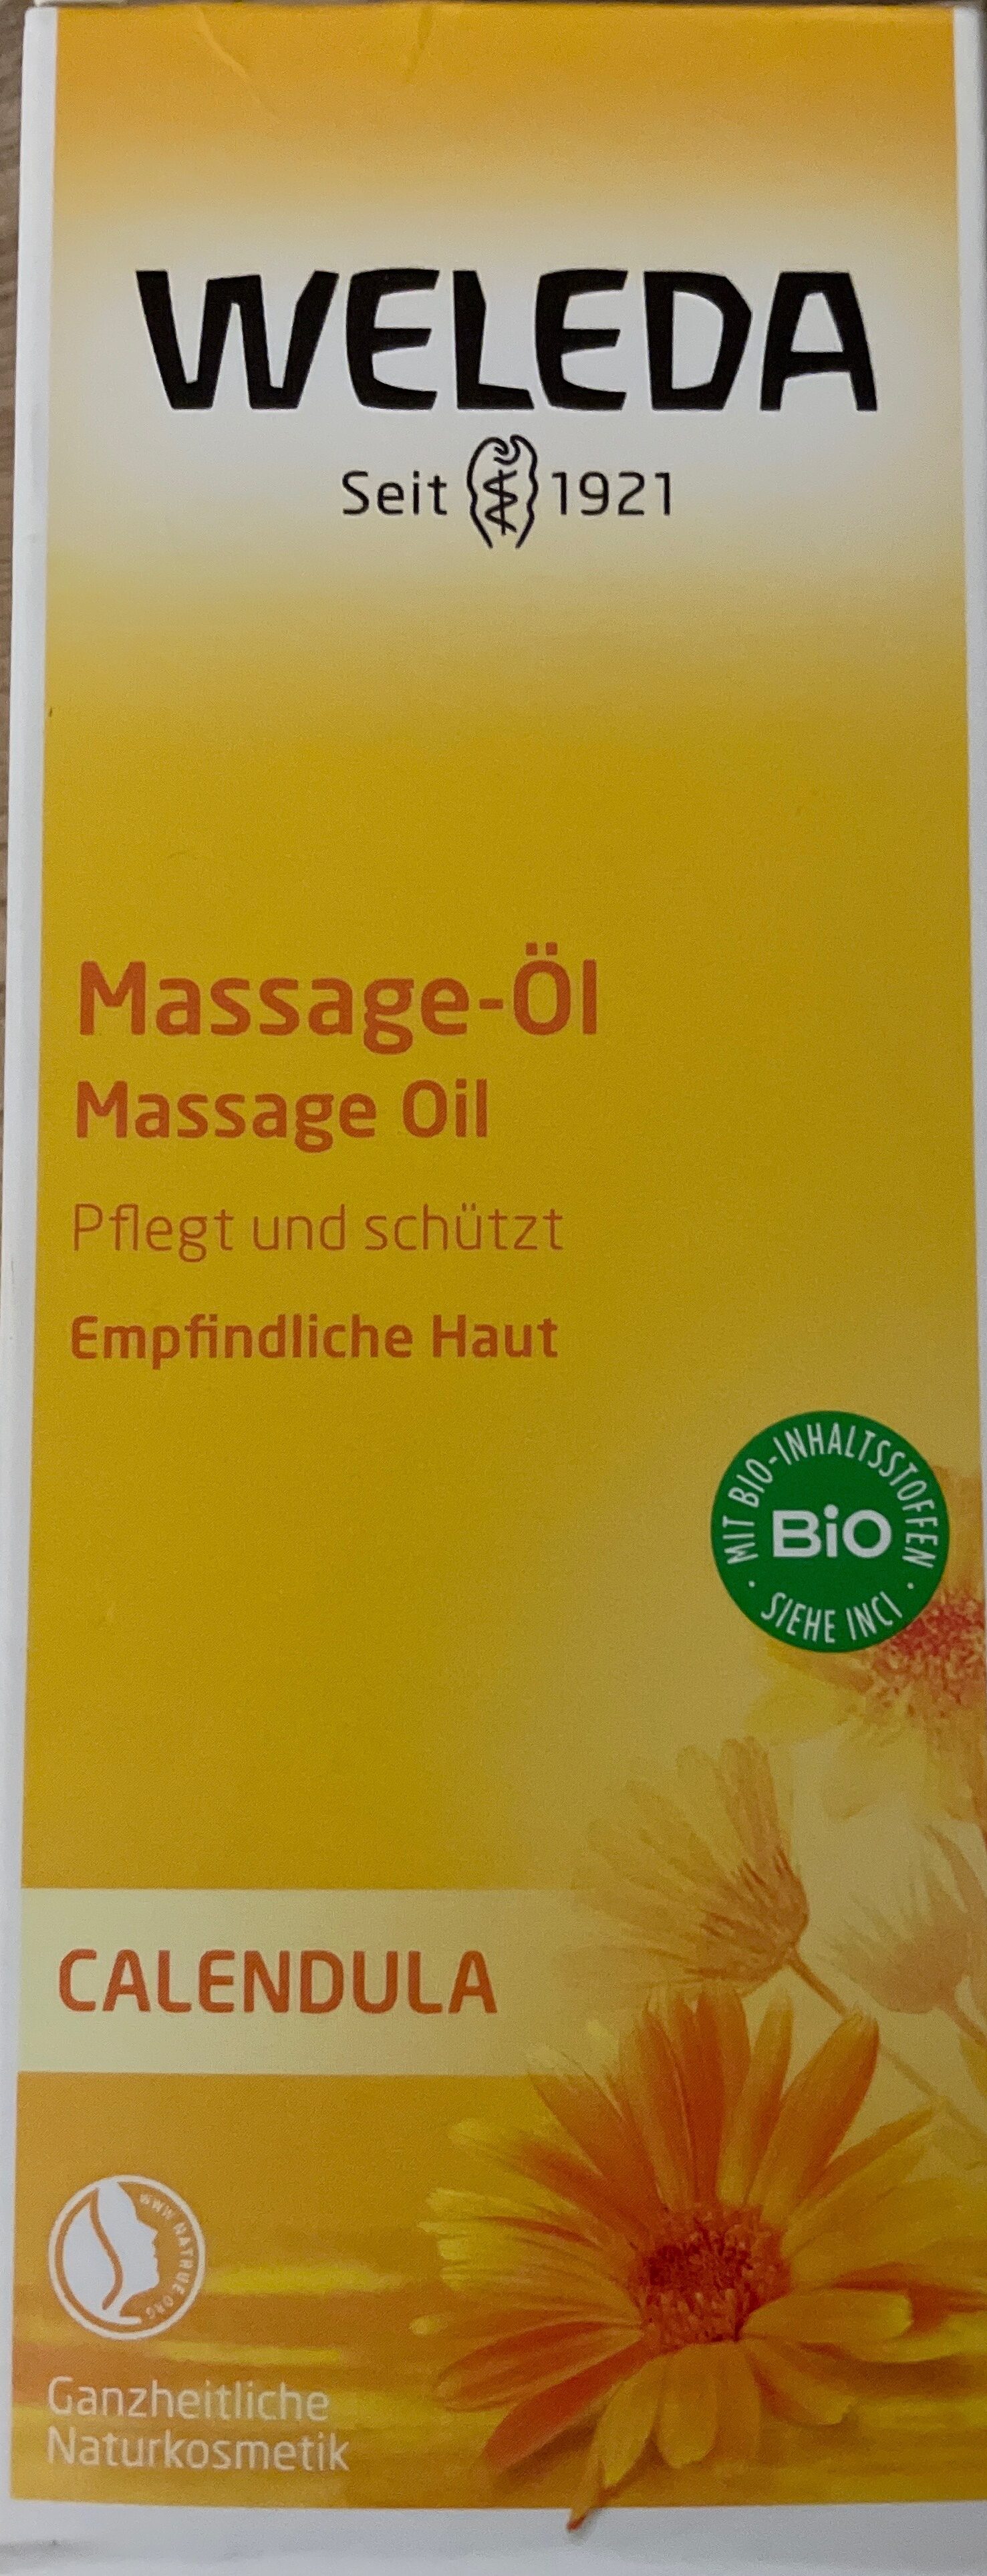 Massage-öl - Produkt - de